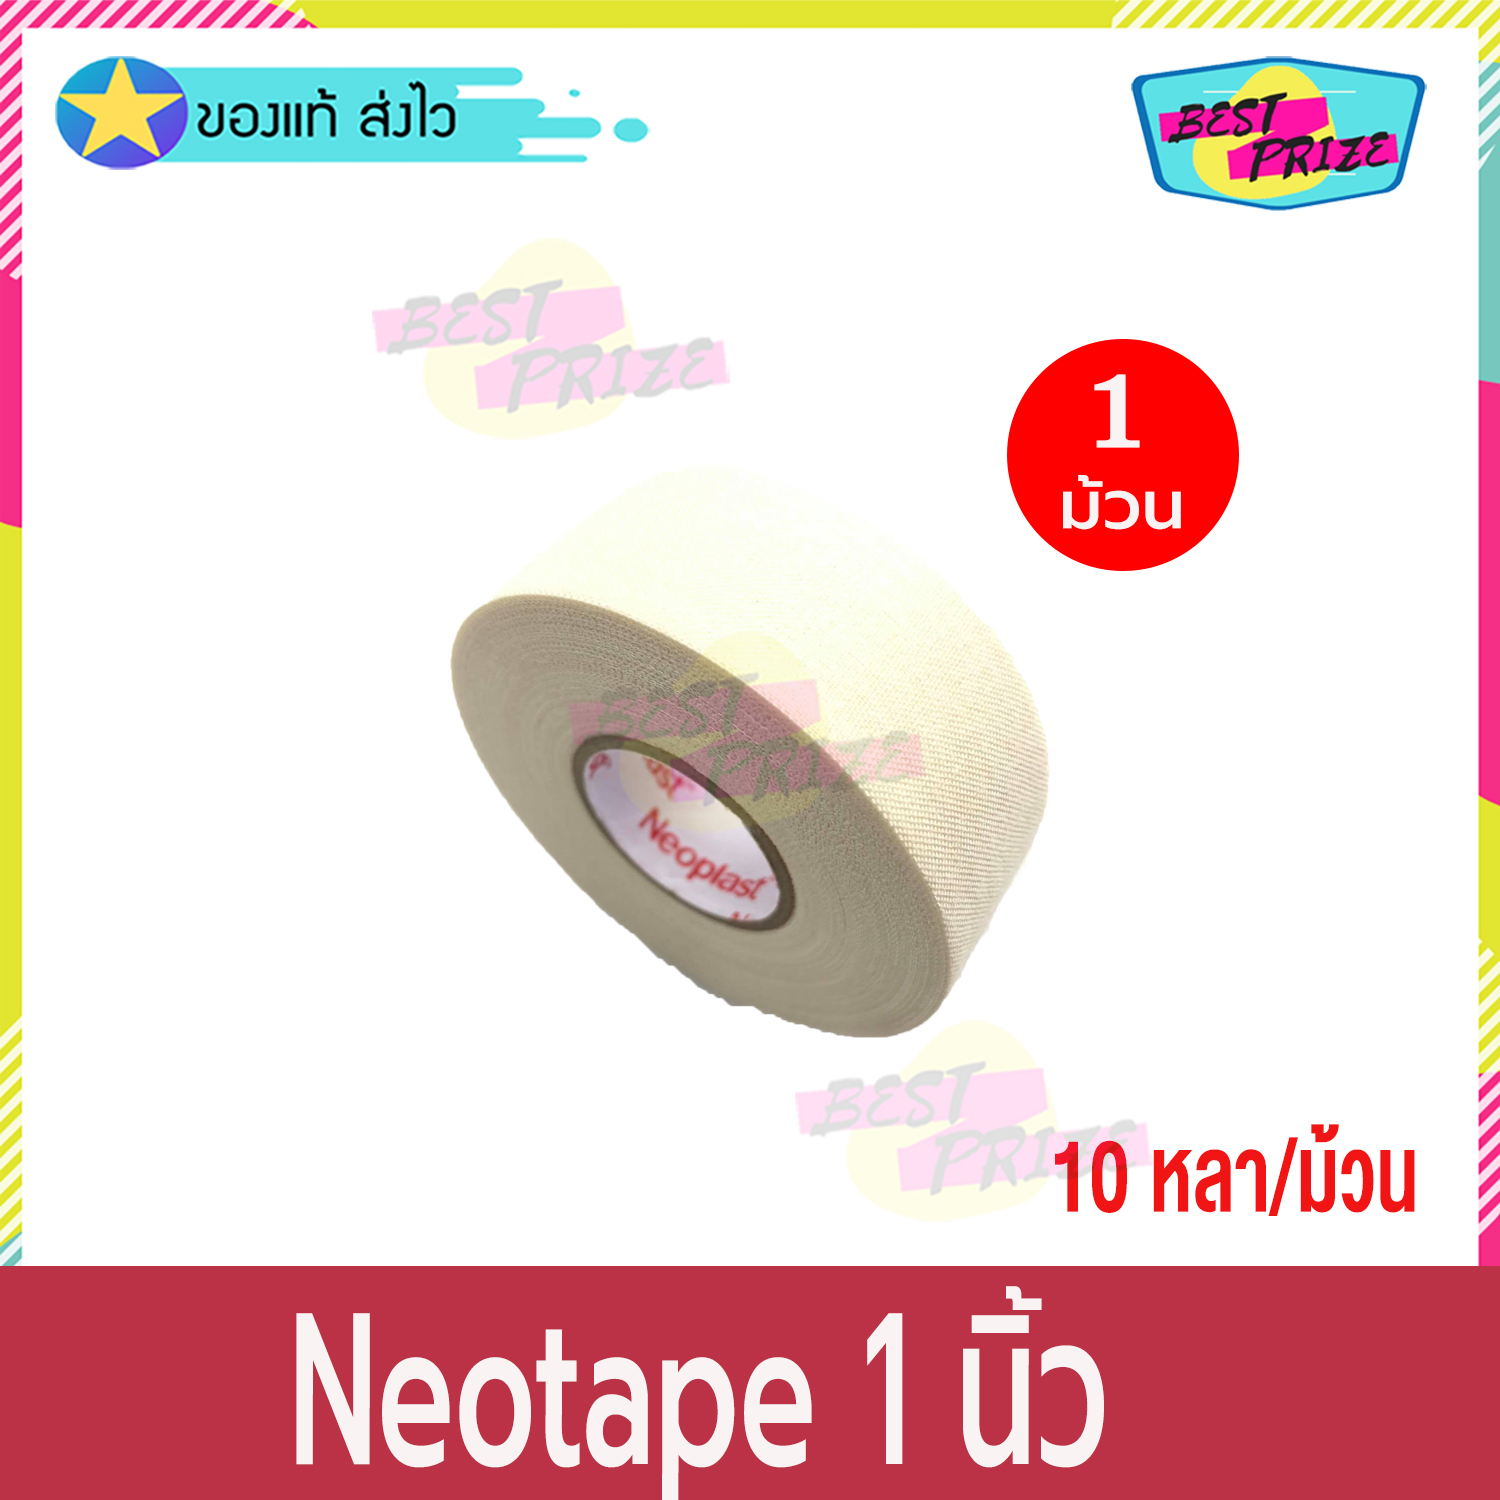 Neoplast Neotape Porous ขนาด 1 นิ้ว x 10 หลา (จำนวน 1 ม้วน) นีโอเทป ผ้าล็อค พันเคล็ด สำหรับนักกีฬา กว้าง 1 นิ้ว ผ้าปิดแผล แบบรูพรุน พลาสเตอร์ผ้า สีขาว